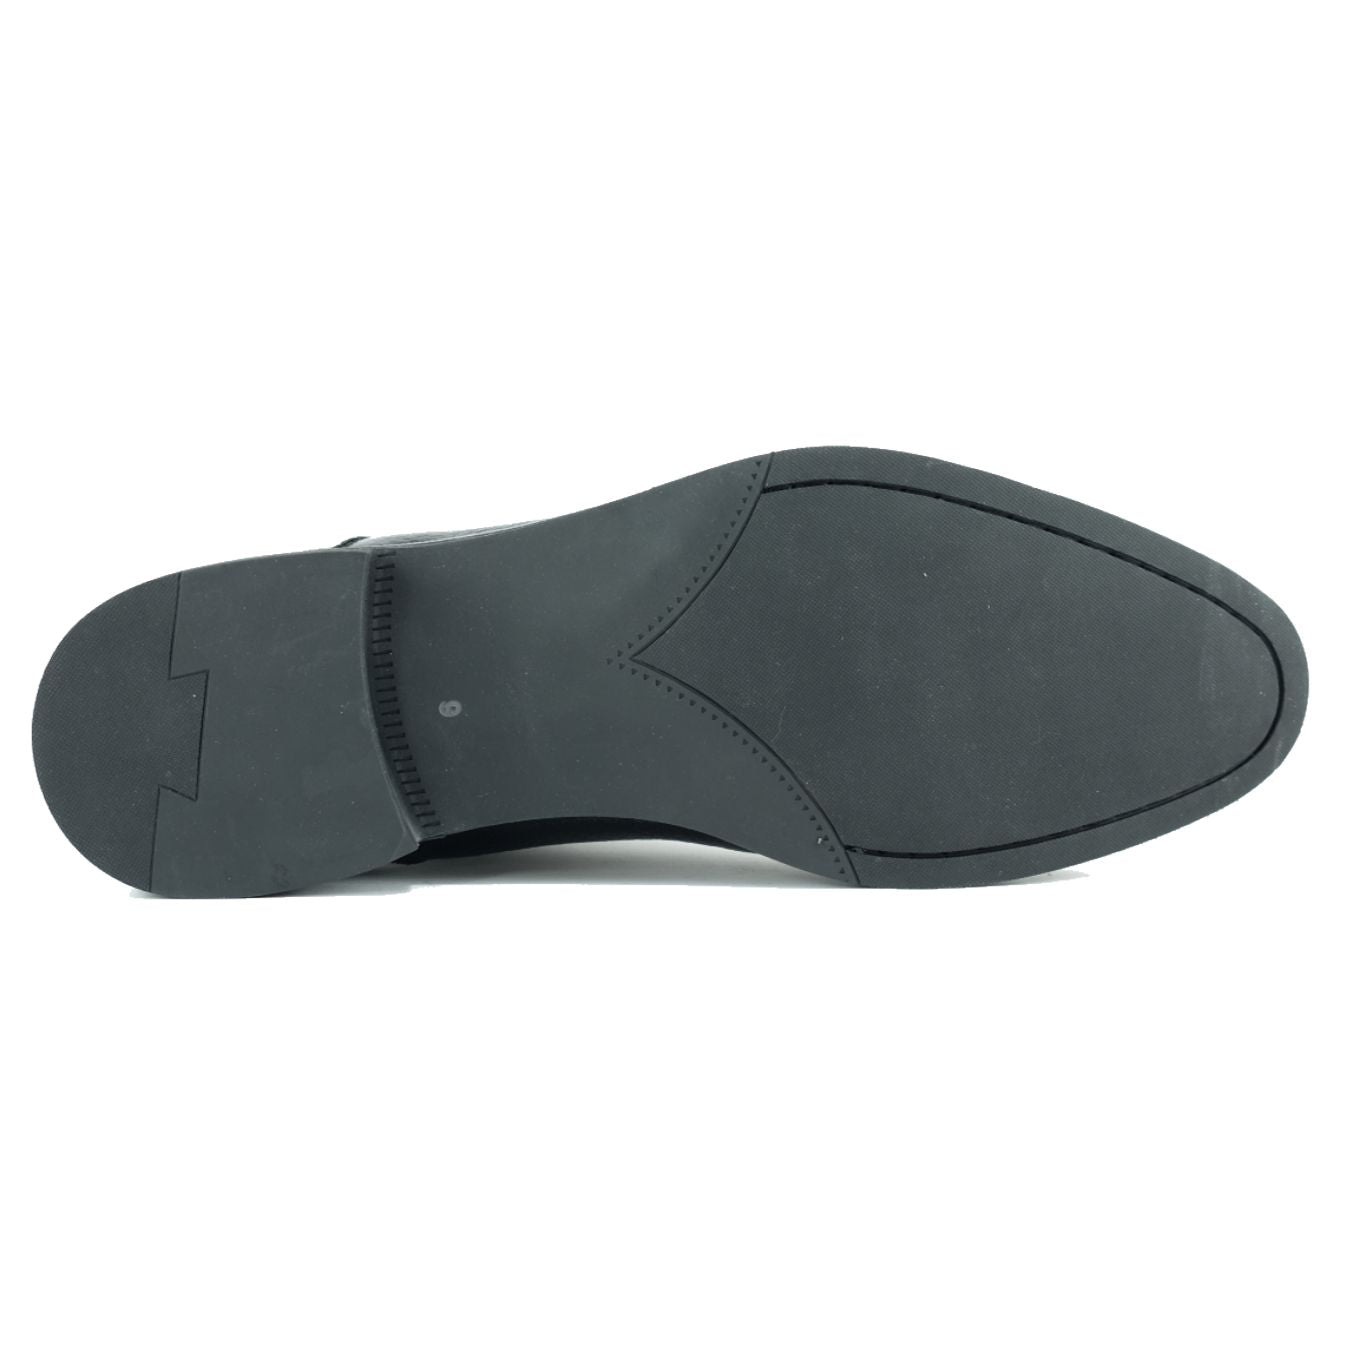 Bern Deerskin Cap-Toe Oxford in Black by Alan Payne Footwear